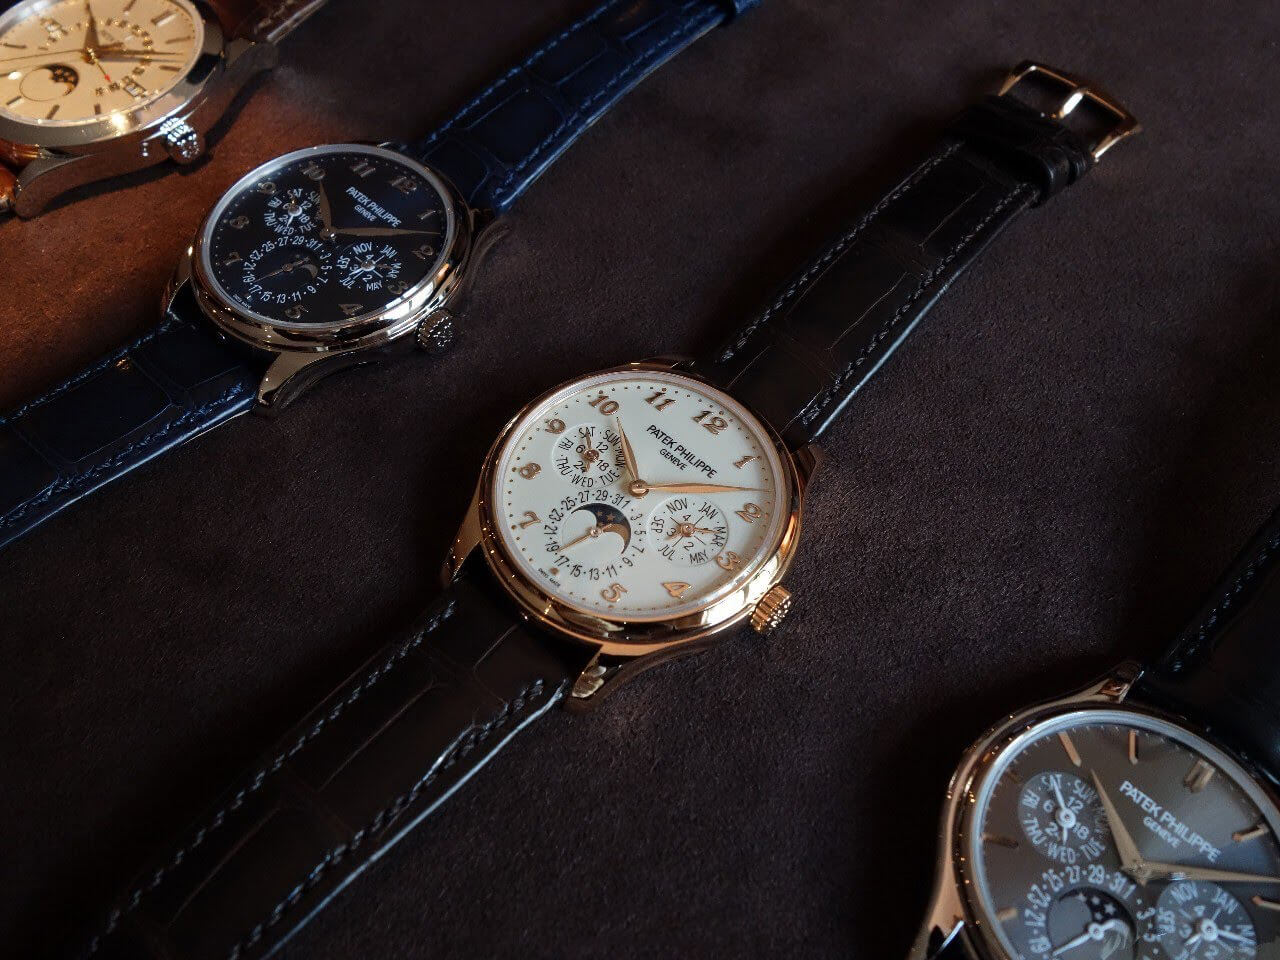 Giới thiệu đồng hồ Patek Philippe Grand Complications 5327 Perpetual Calendar